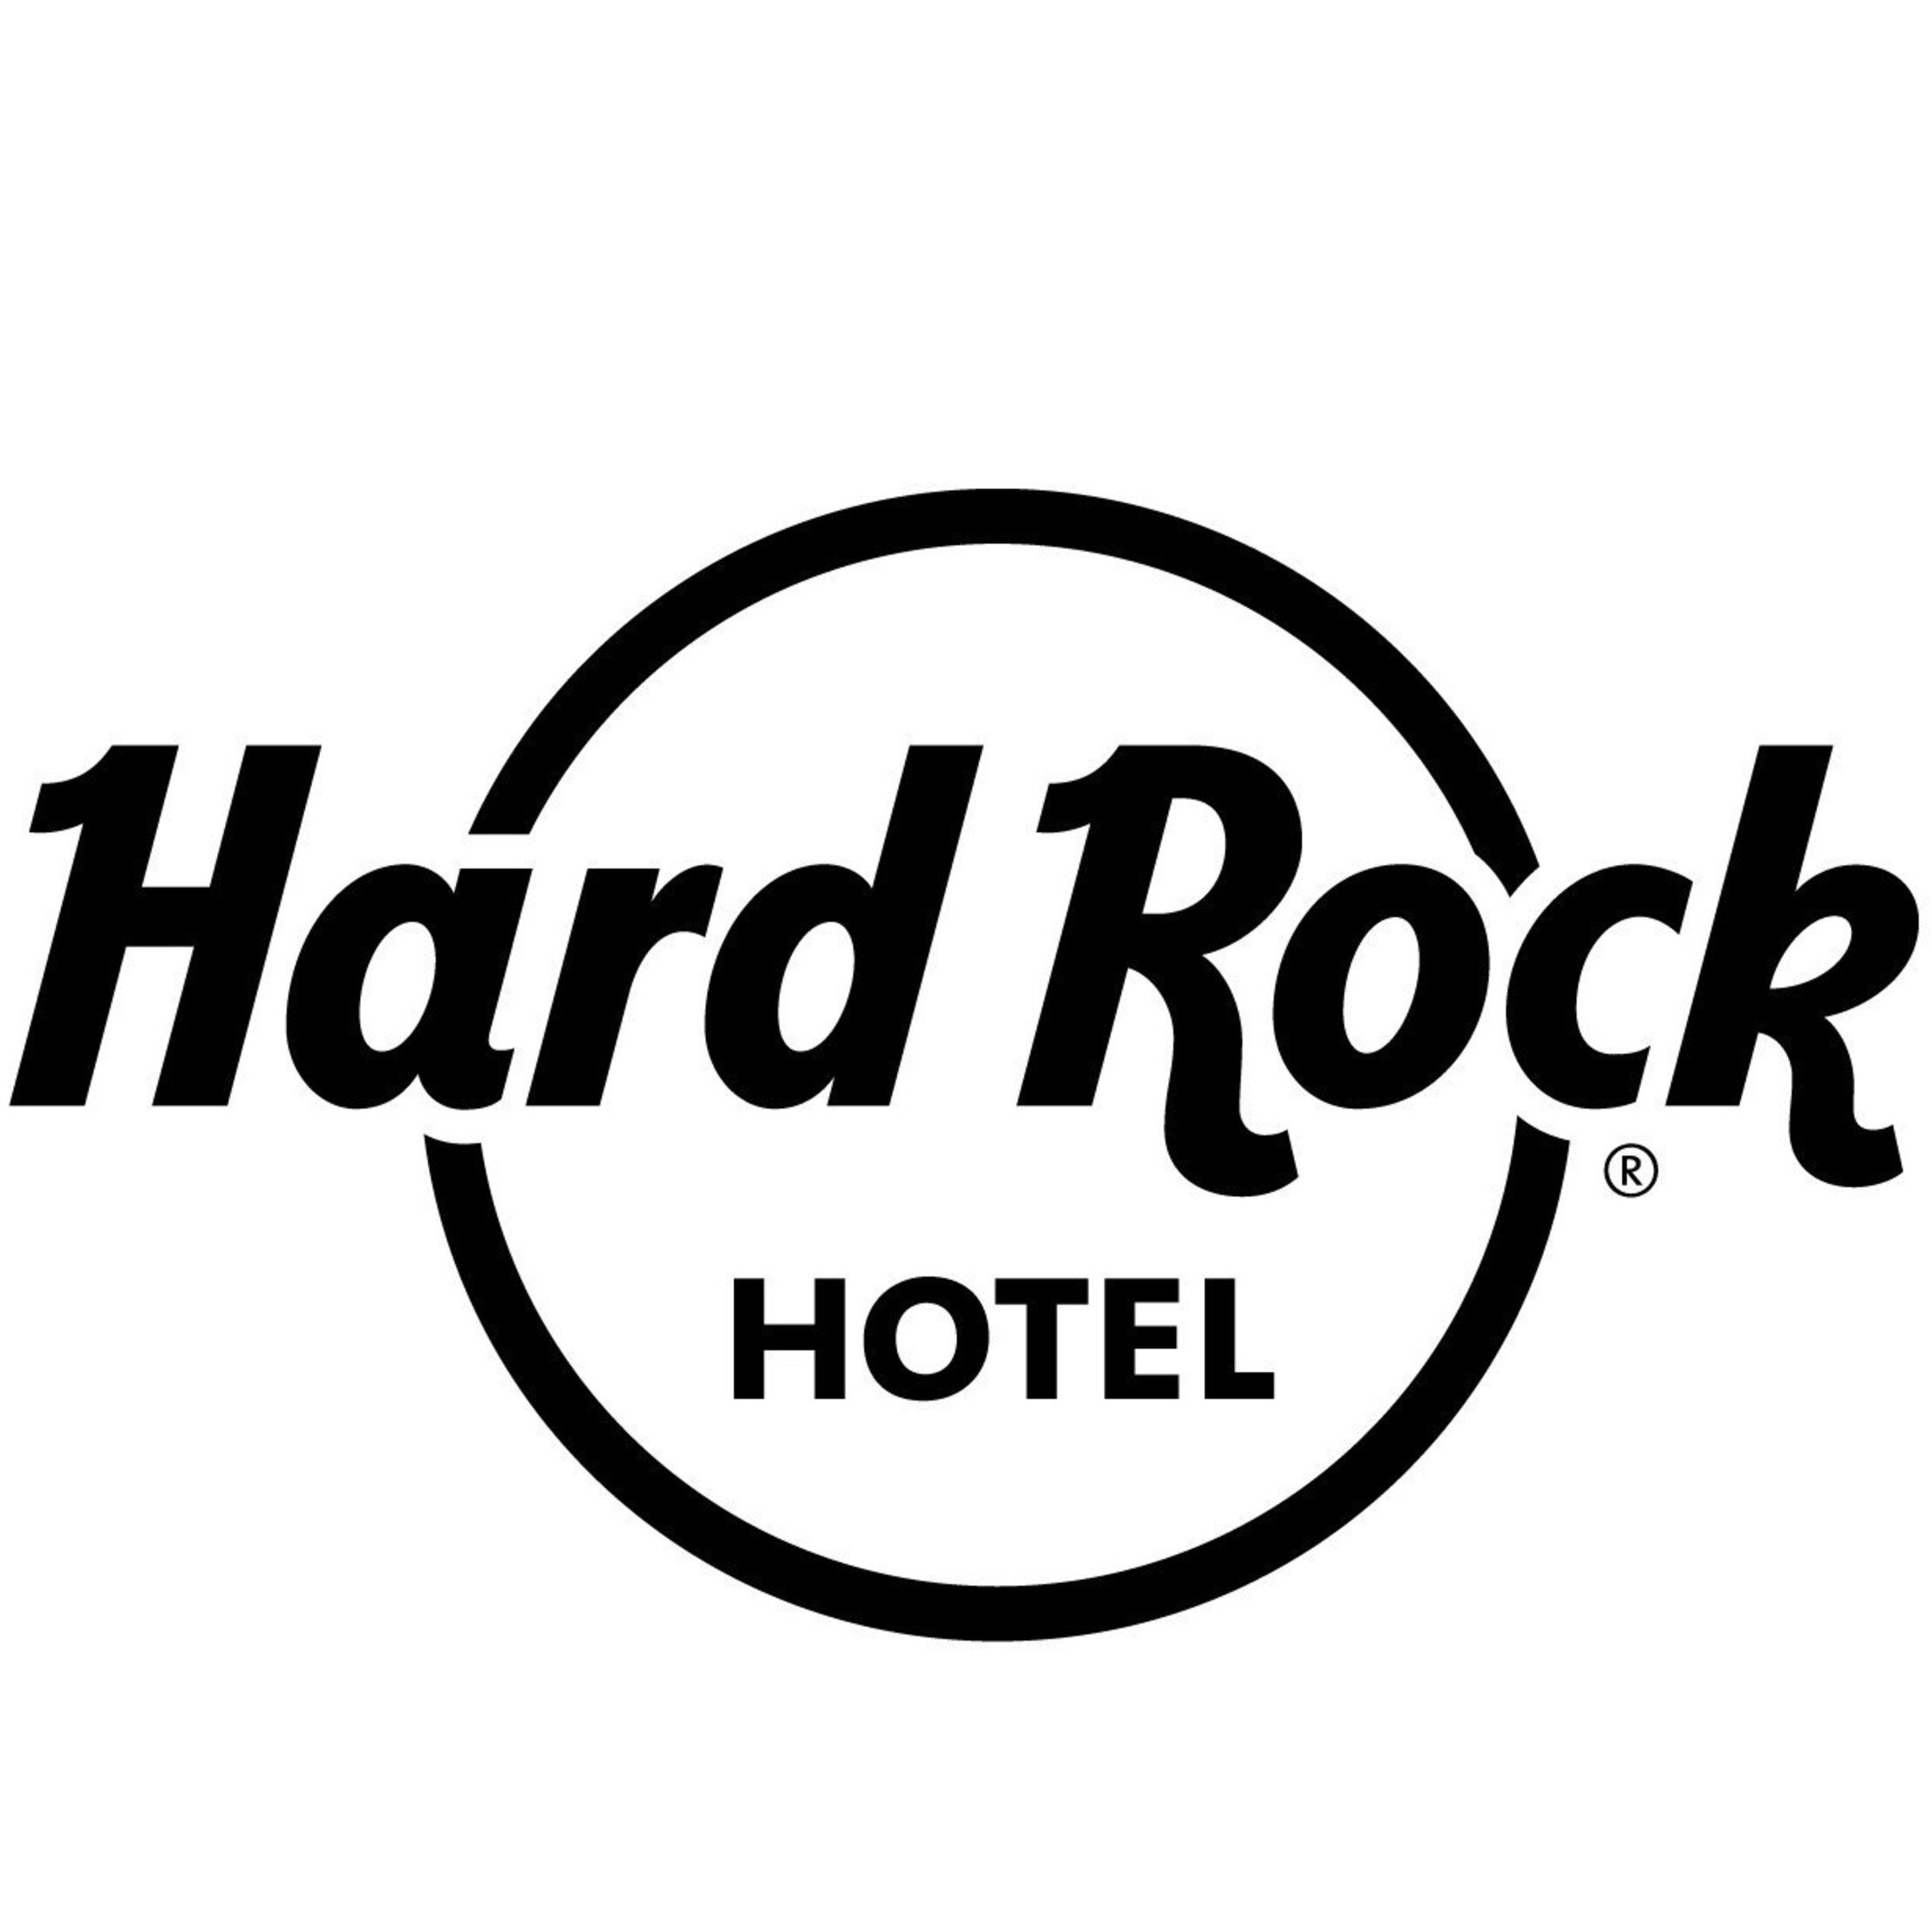 Hard Rock Hotel_logo.jpeg